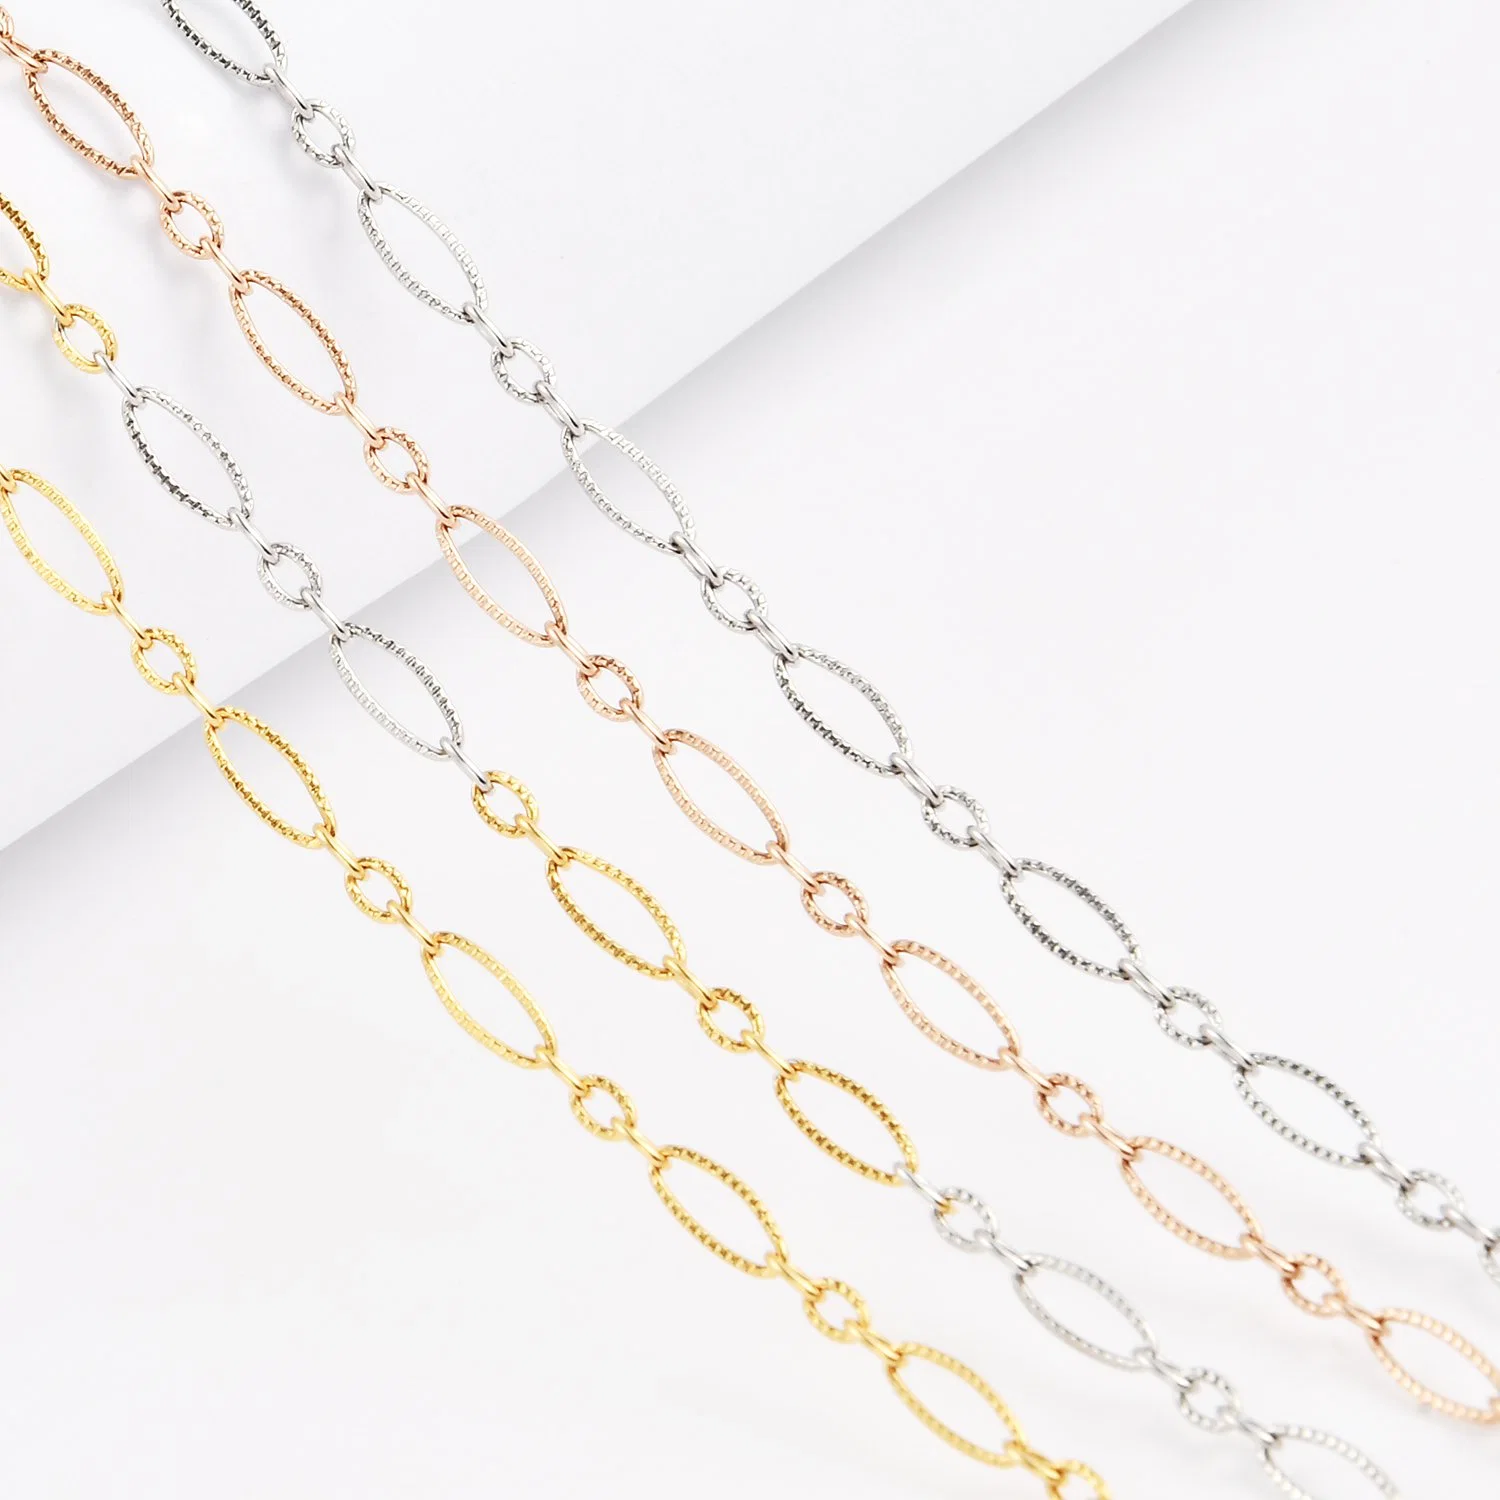 Collar de moda la fabricación de acero inoxidable 316L Collar Cadena de Cable Bulkbuy Accesorios para dama en relieve Diseño de joyas personalizadas para joyería